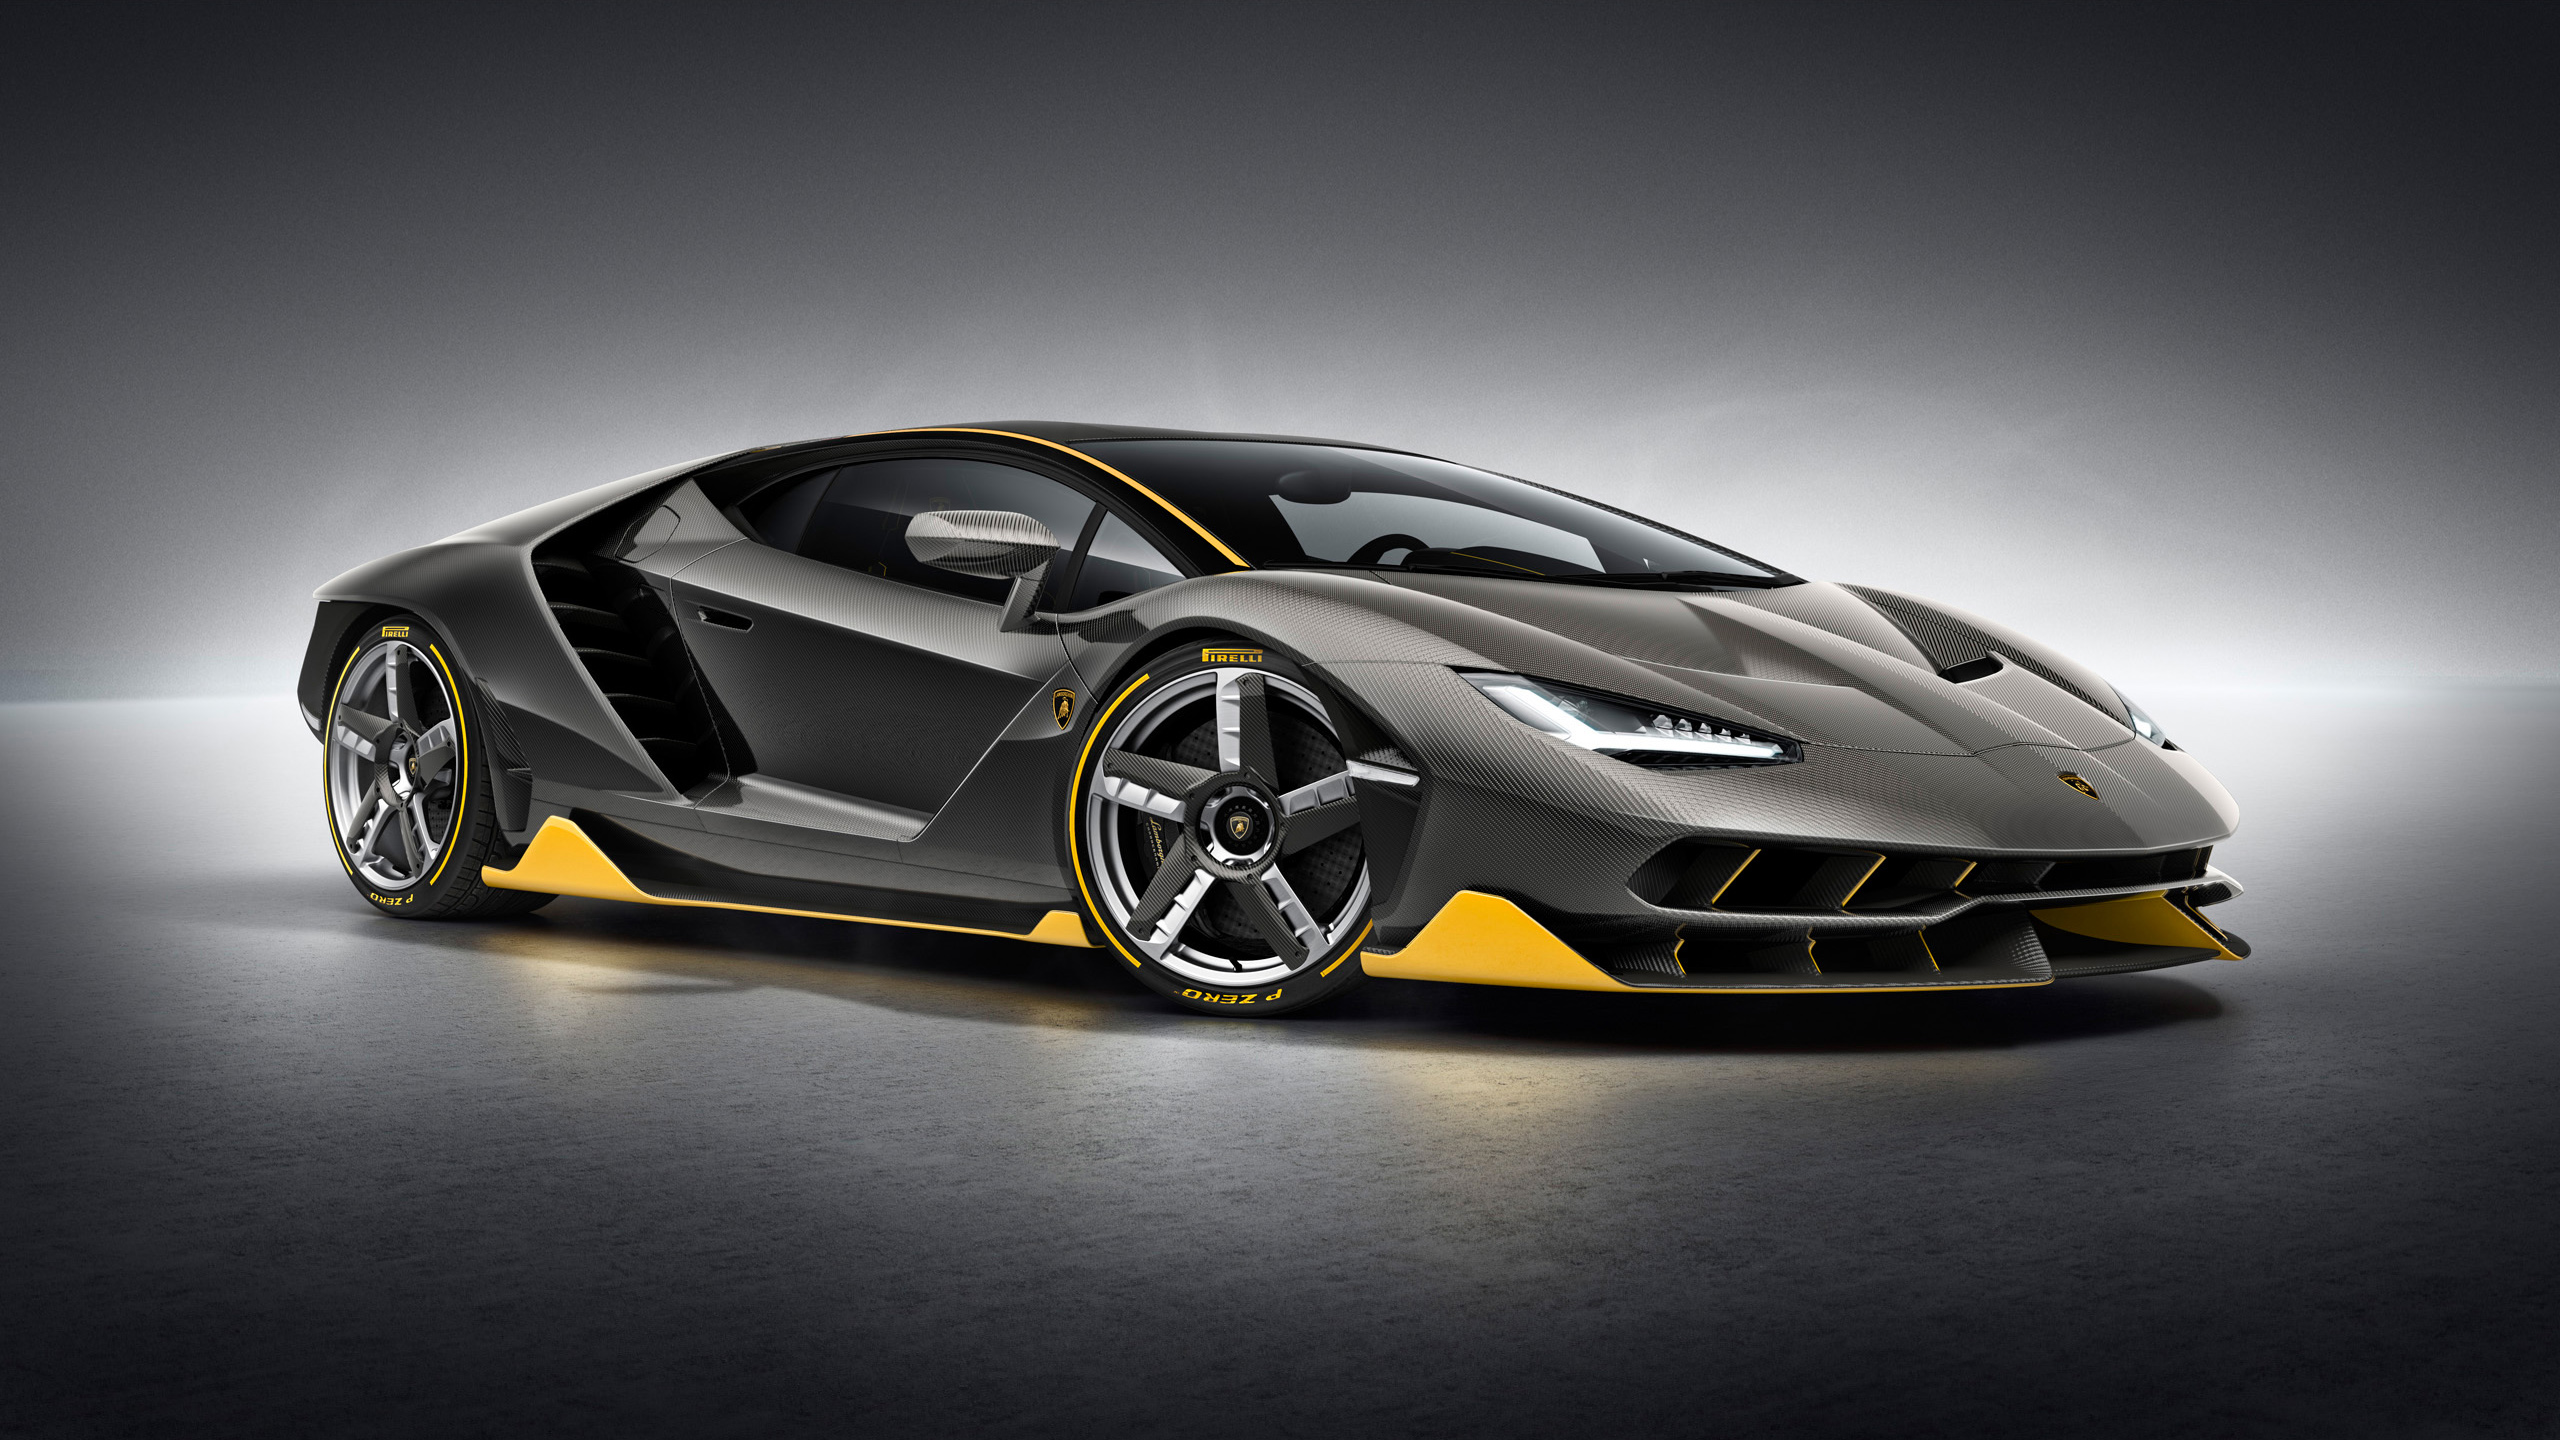 Lamborghini Centenario Wallpaper And Background Image